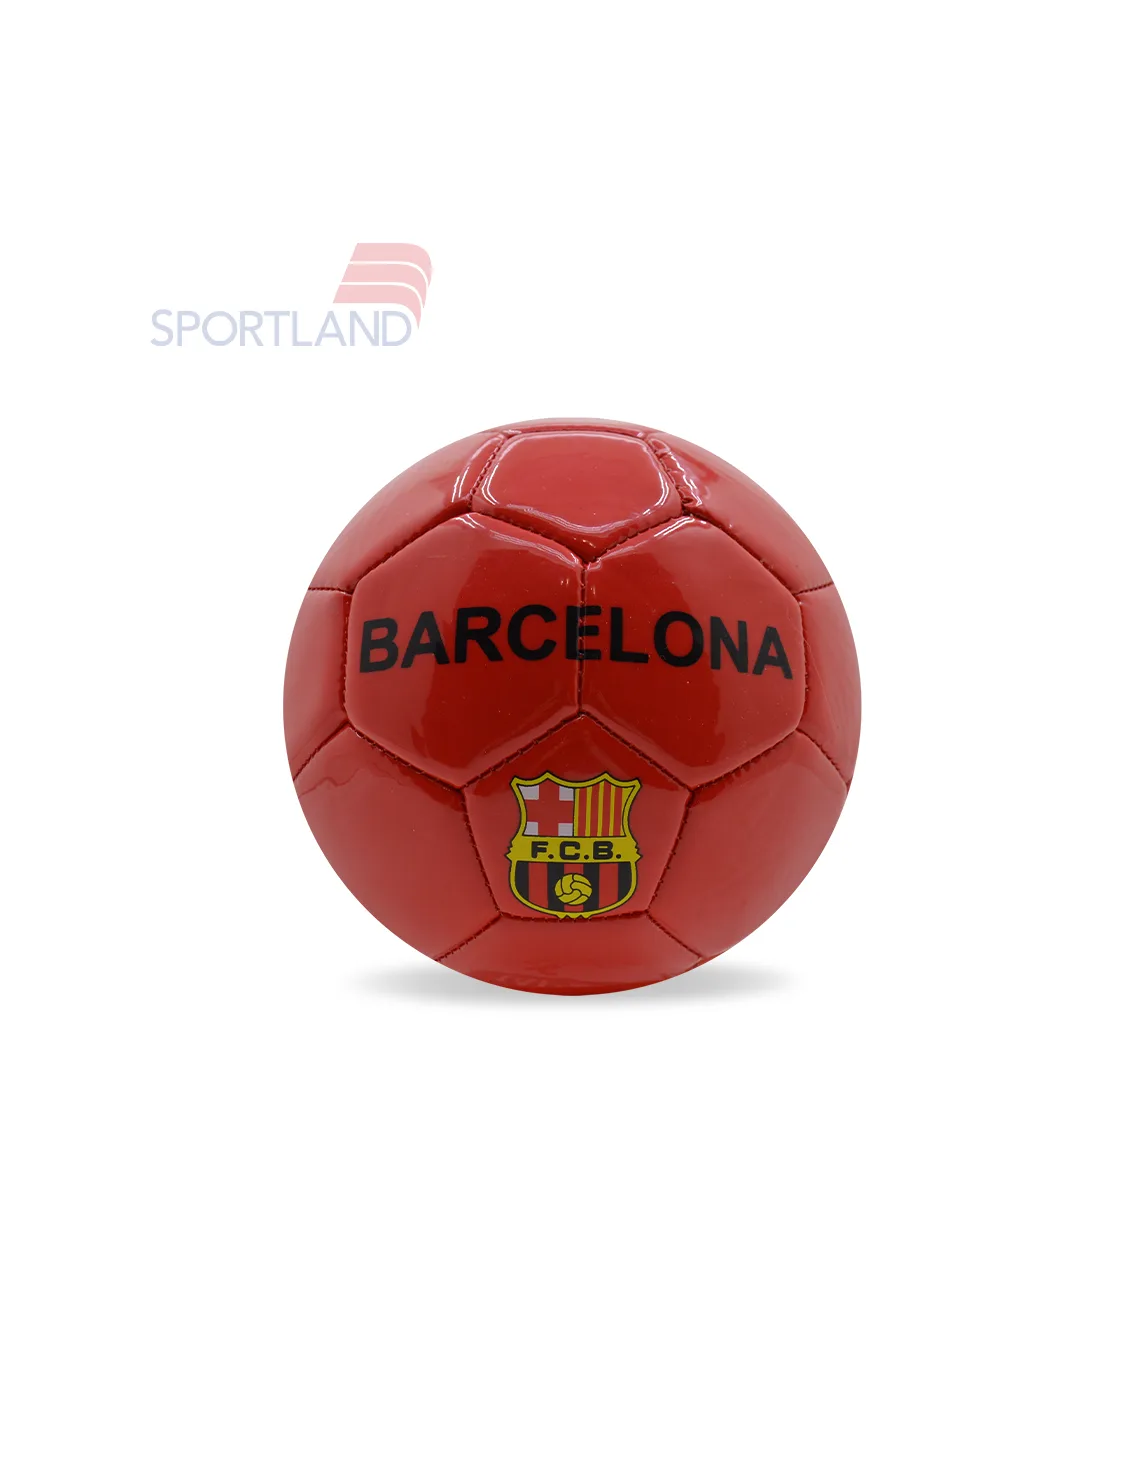 توپ فوتبال بچه گانه اسپورتلند Maradona Barcelona K